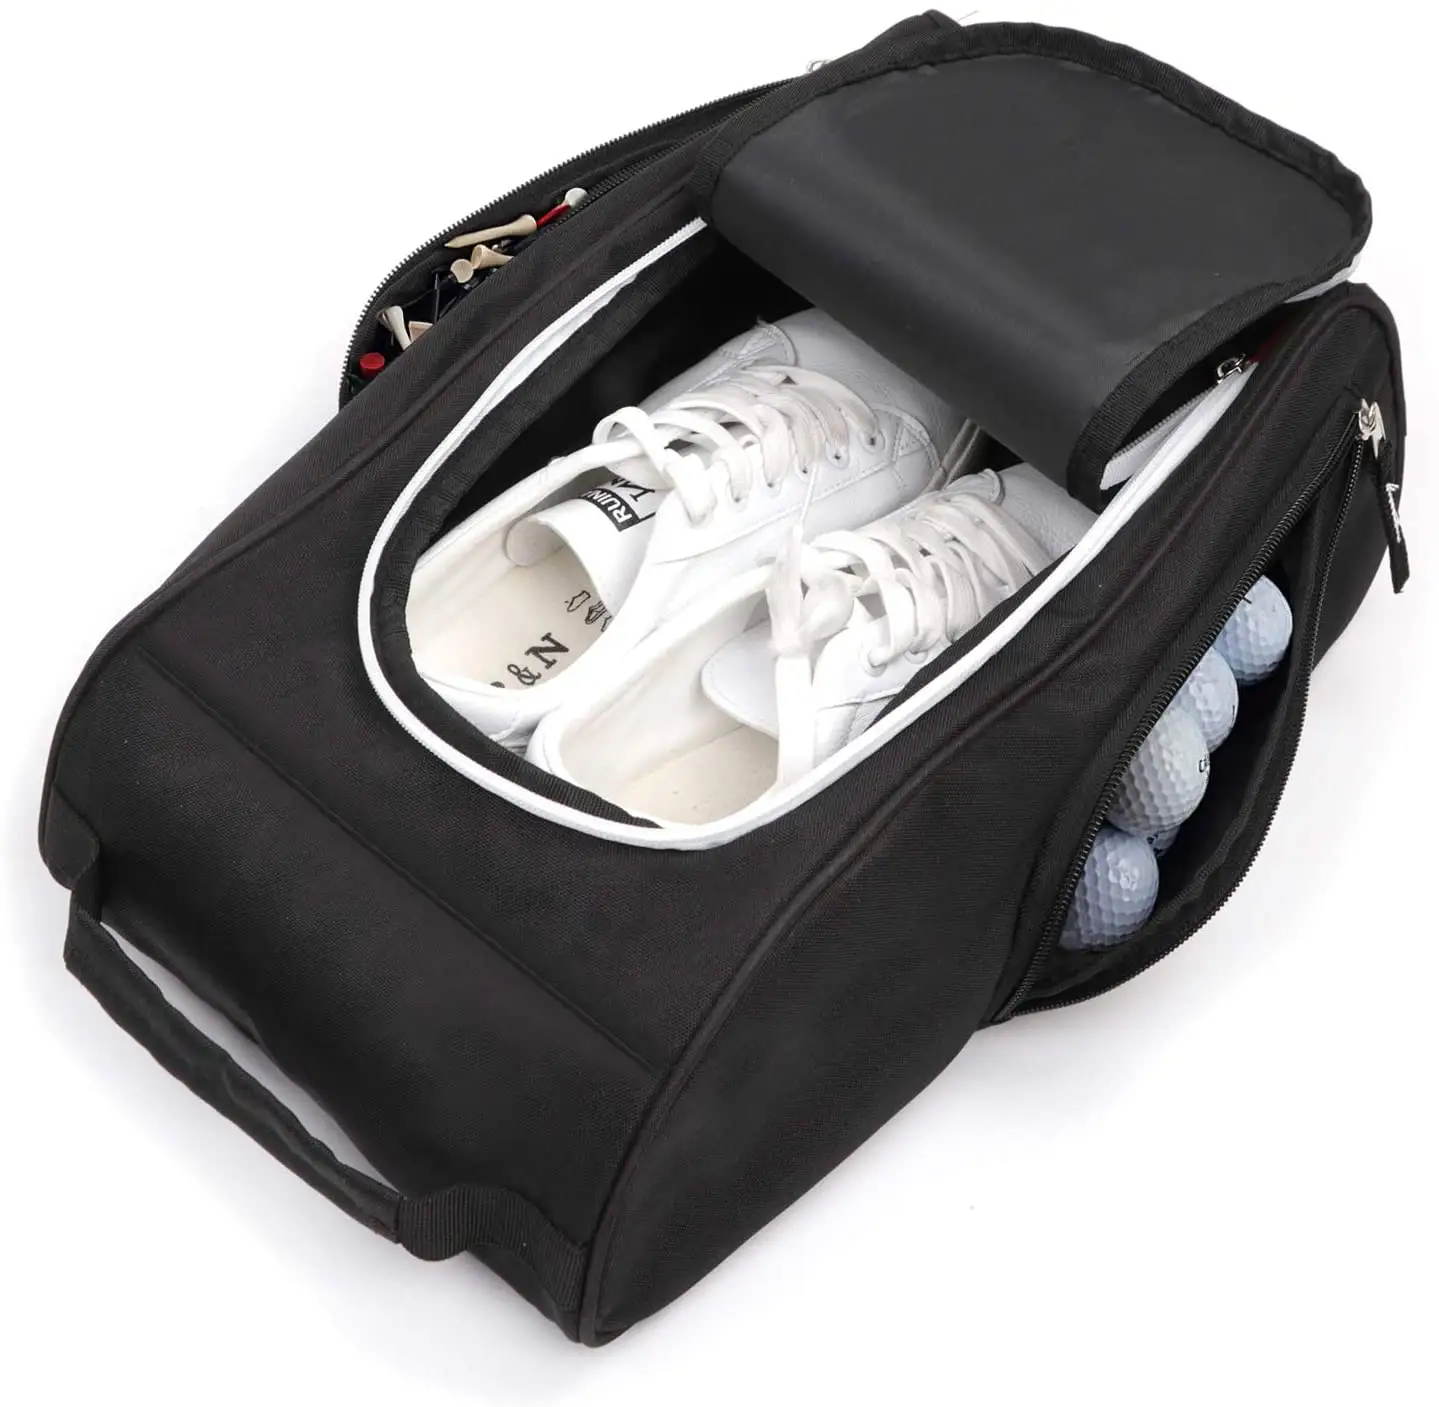 مخصص السفر انغلق حذاء حقائب للحمل حقيبة أحذية s مخصص شعار حذاء جولف حقيبة أحذية